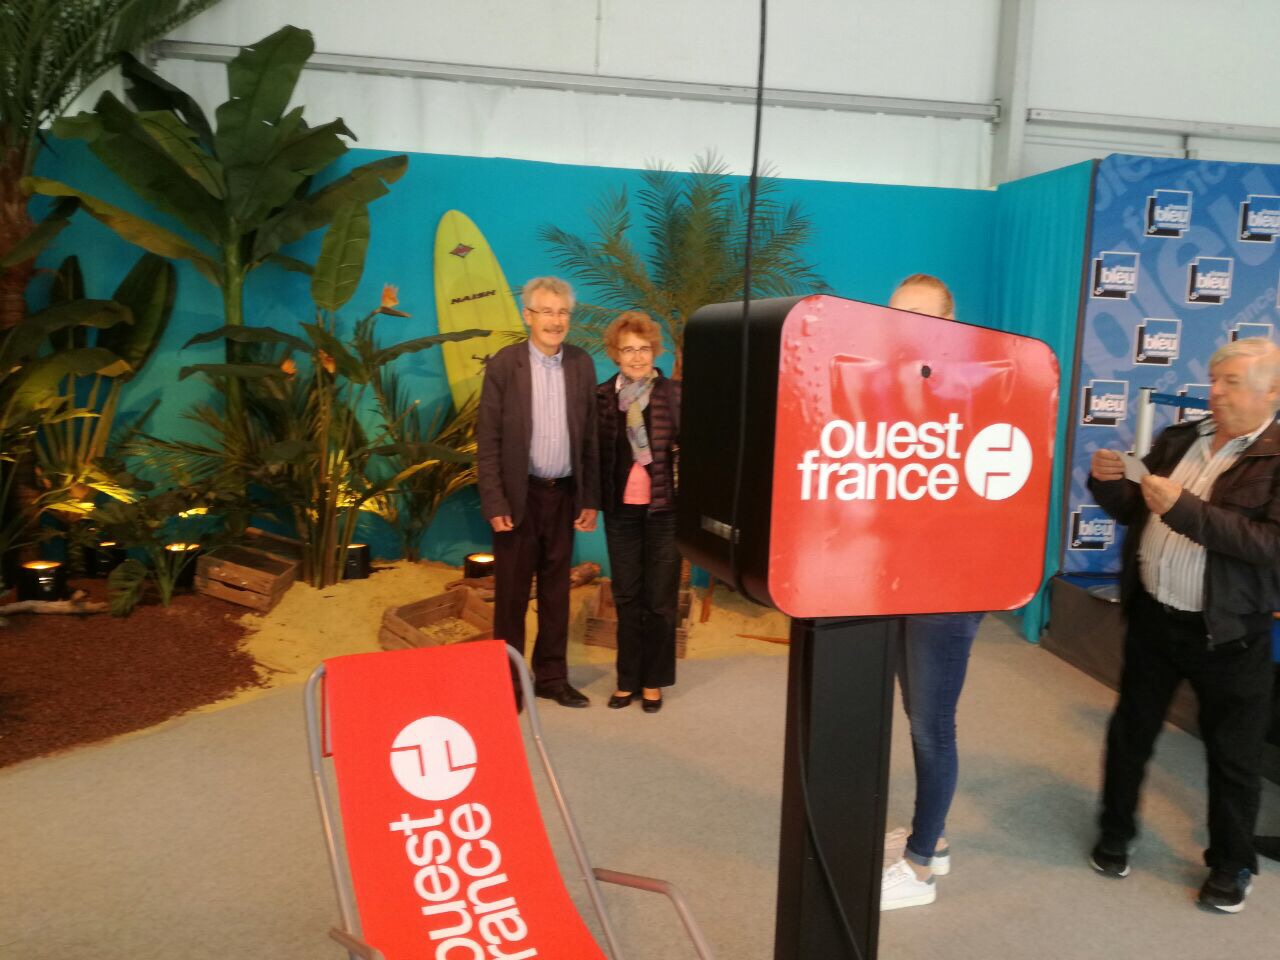 Borne selfie tactile animation stand Ouest France à foire de Caen 2017 avec impressions photos personnalisées pour les visiteurs